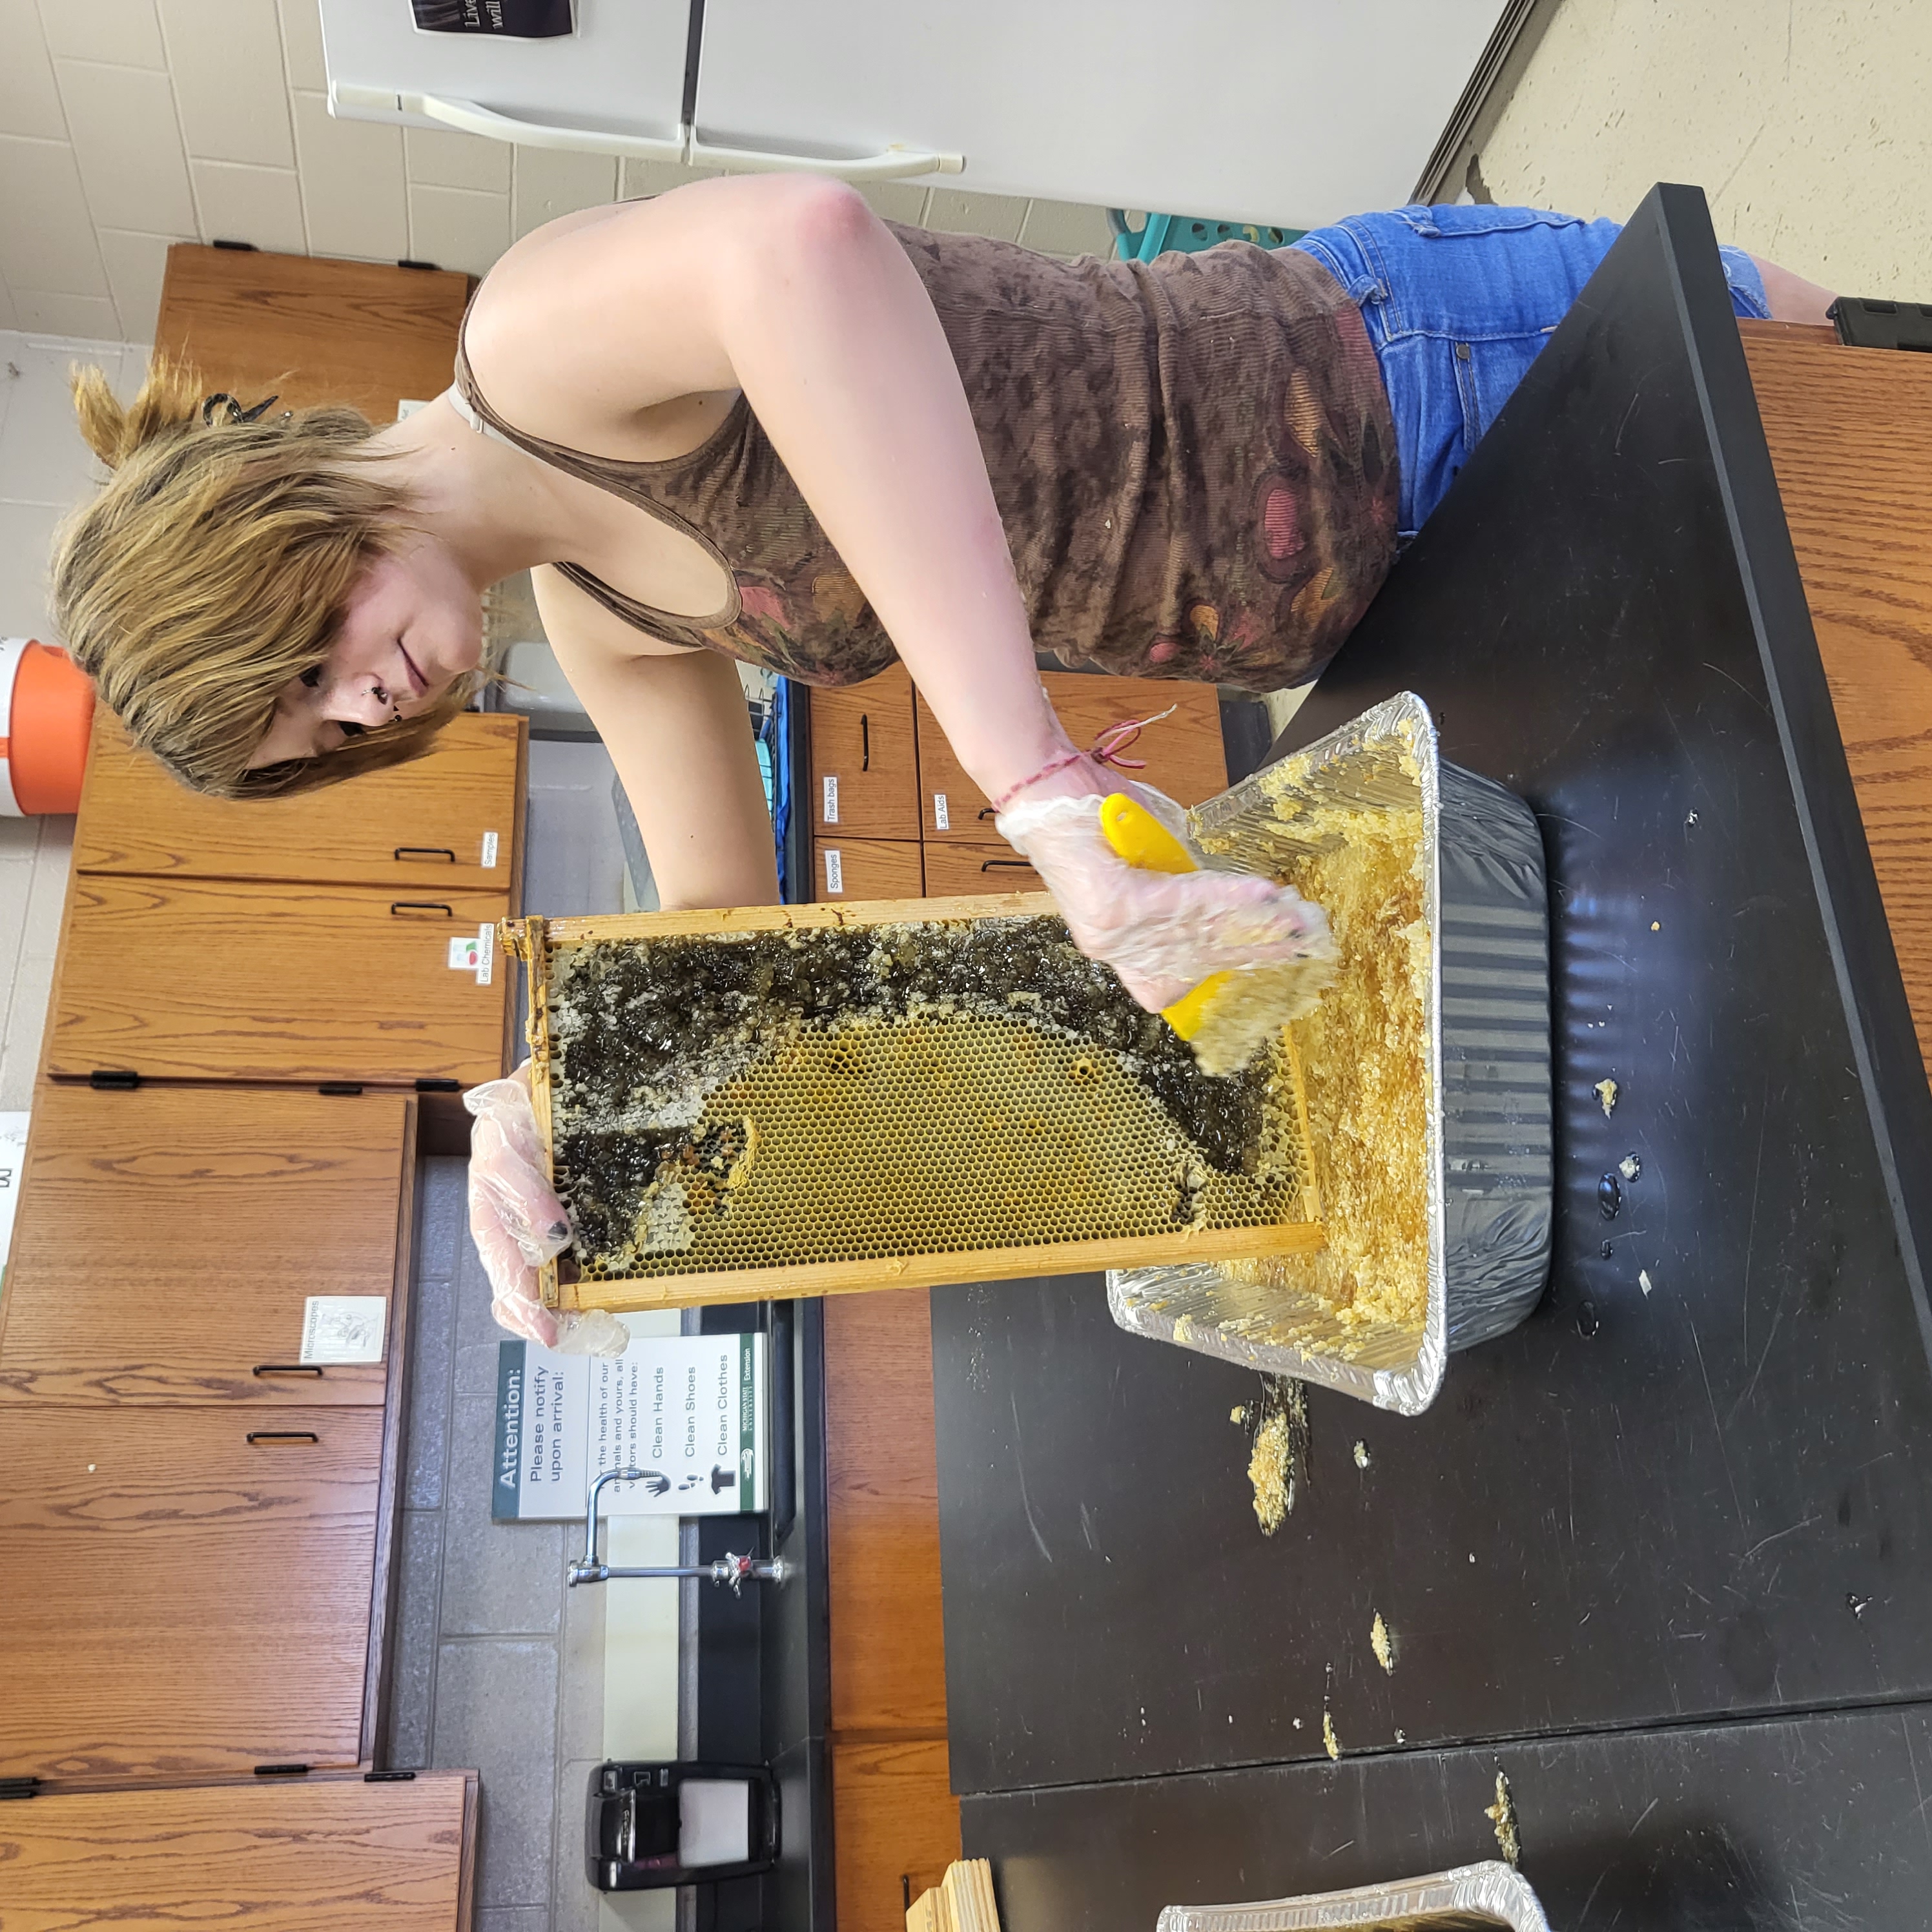 extracting honey